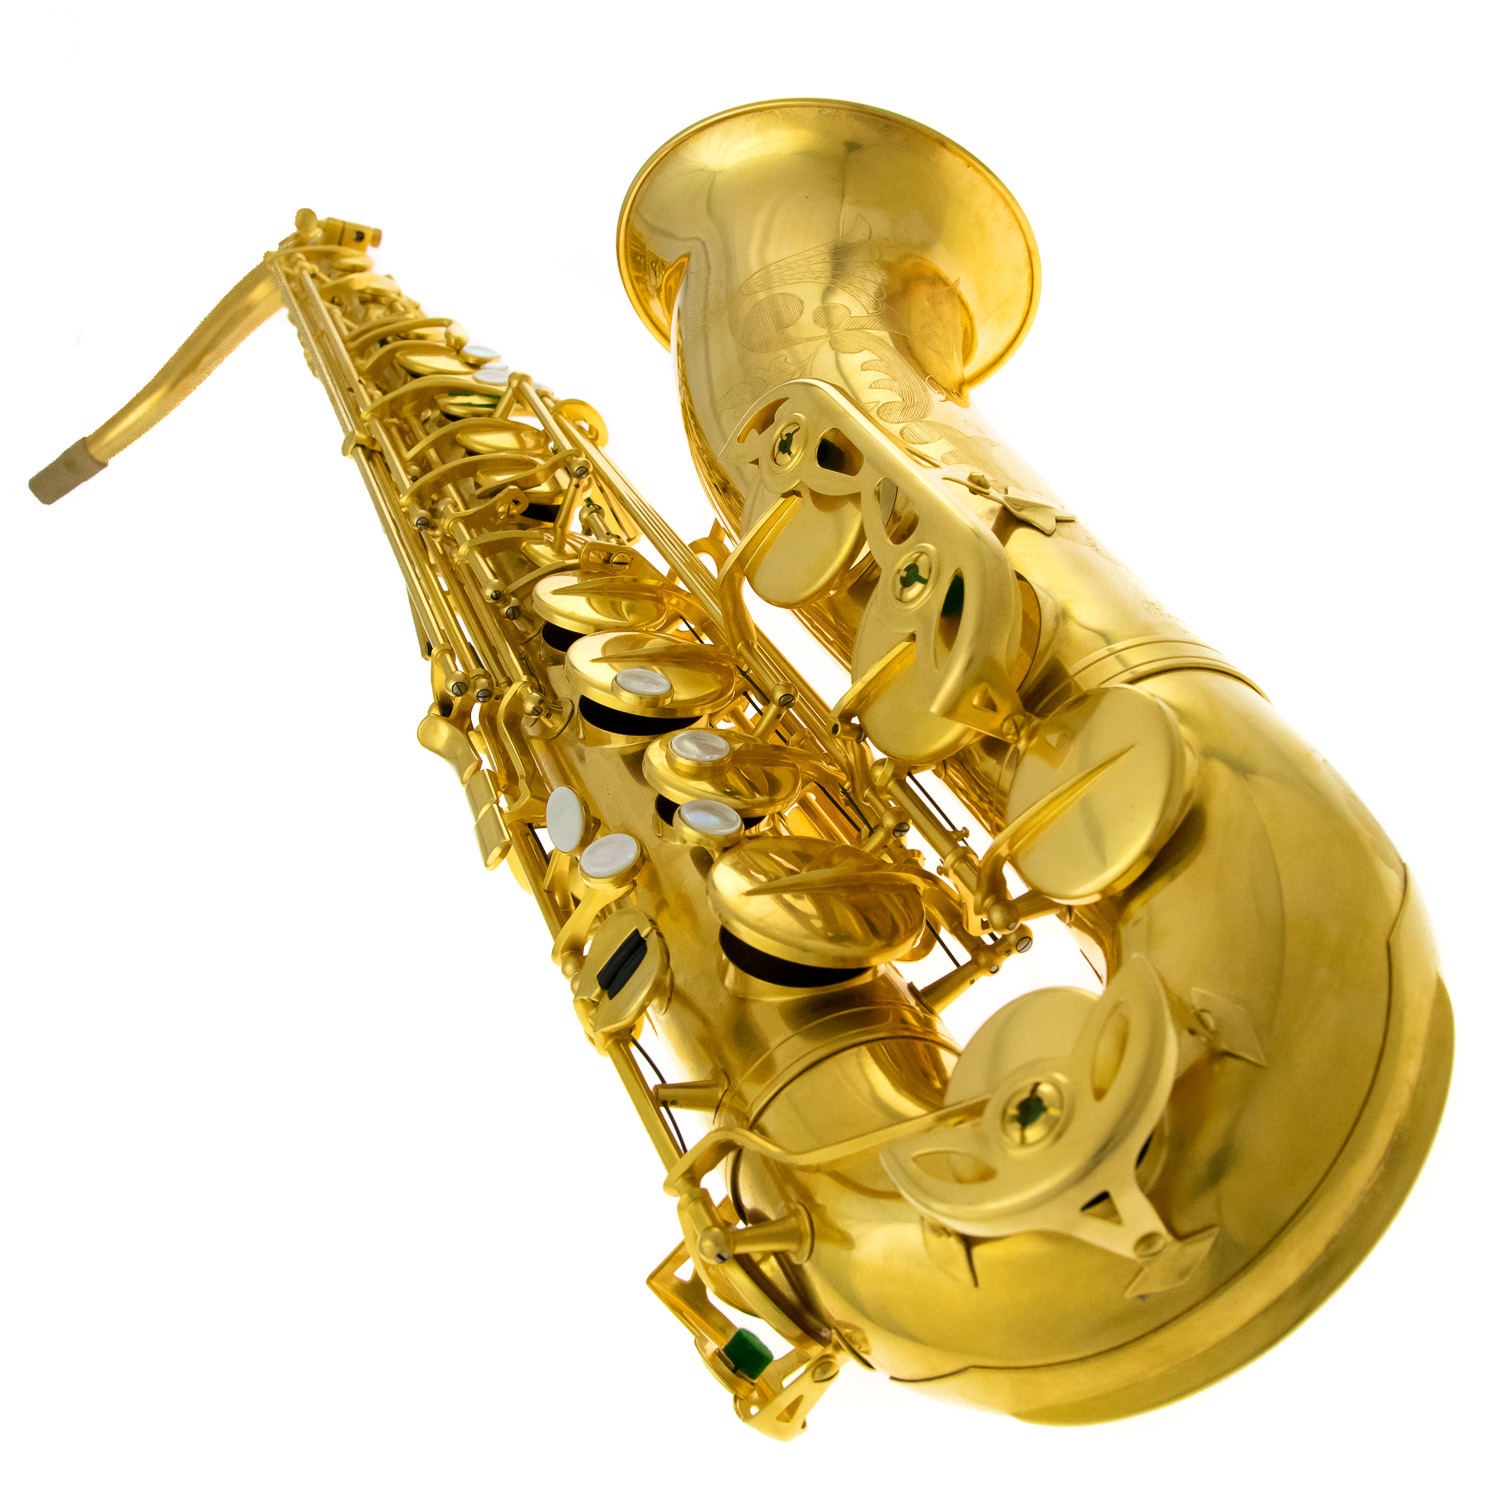 Rampone & Cazzani Tenor Sax - R1 Jazz - 24K Heavy Gold Plated